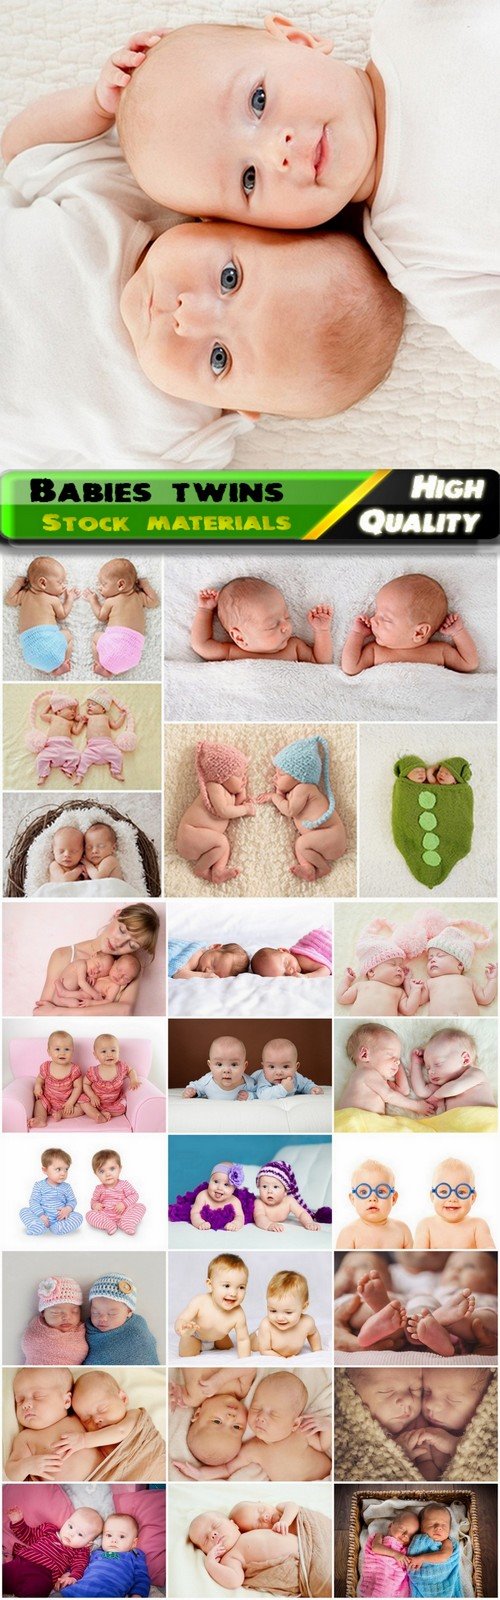 Cute newborn babies twins - 25 HQ Jpg